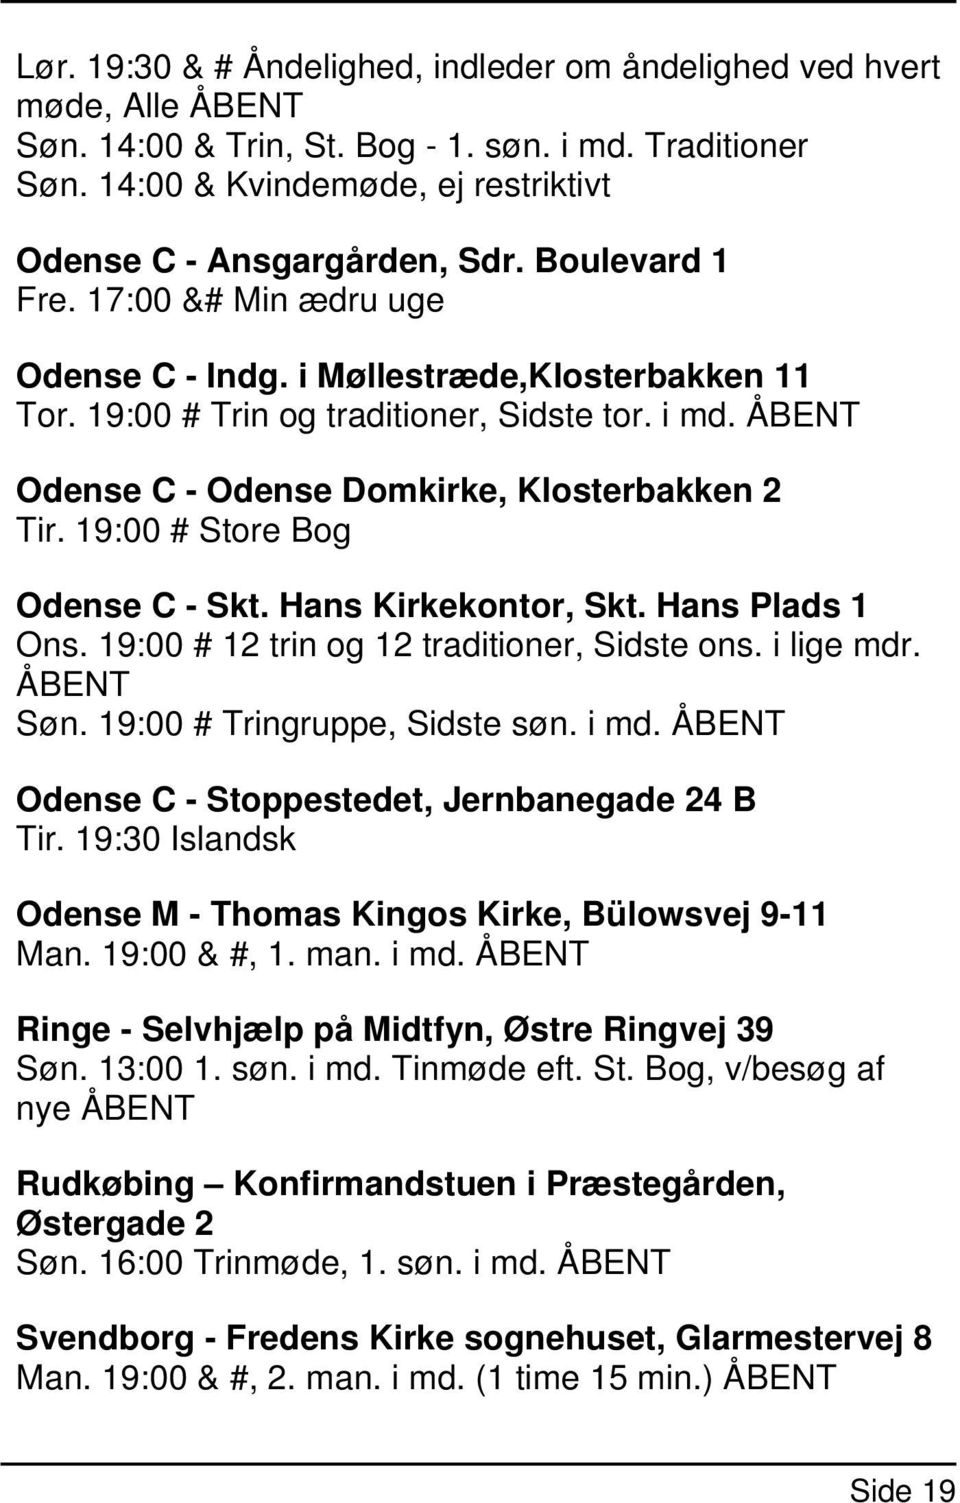 i md. ÅBENT Odense C - Odense Domkirke, Klosterbakken 2 Tir. 19:00 # Store Bog Odense C - Skt. Hans Kirkekontor, Skt. Hans Plads 1 Ons. 19:00 # 12 trin og 12 traditioner, Sidste ons. i lige mdr.